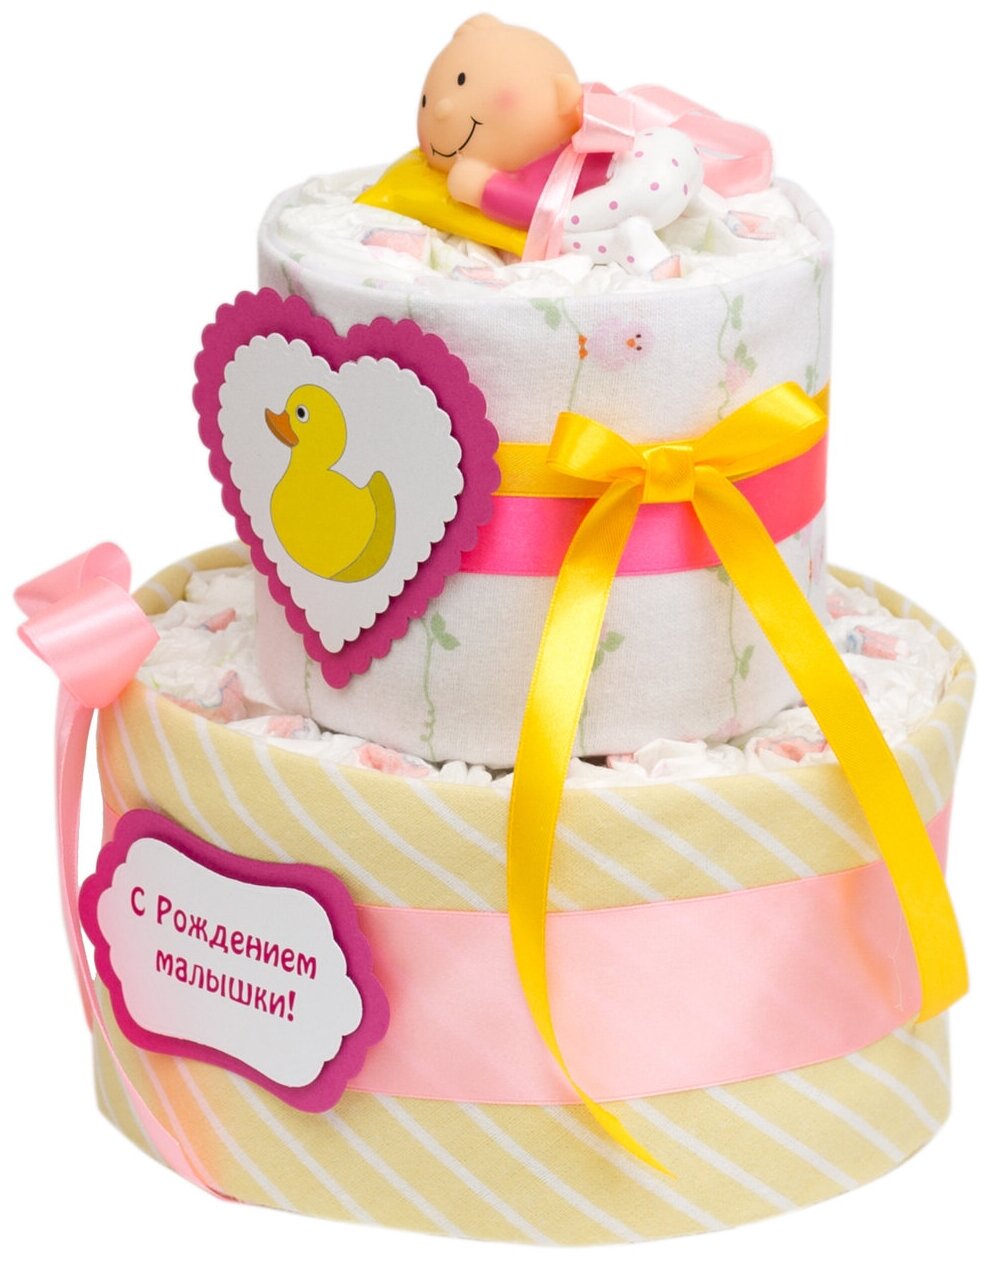 Милый торт из подгузников "Утенок" для новорожденной девочки на встречу из роддома, с пеленками и игрушкой для ванны, двухъярусный